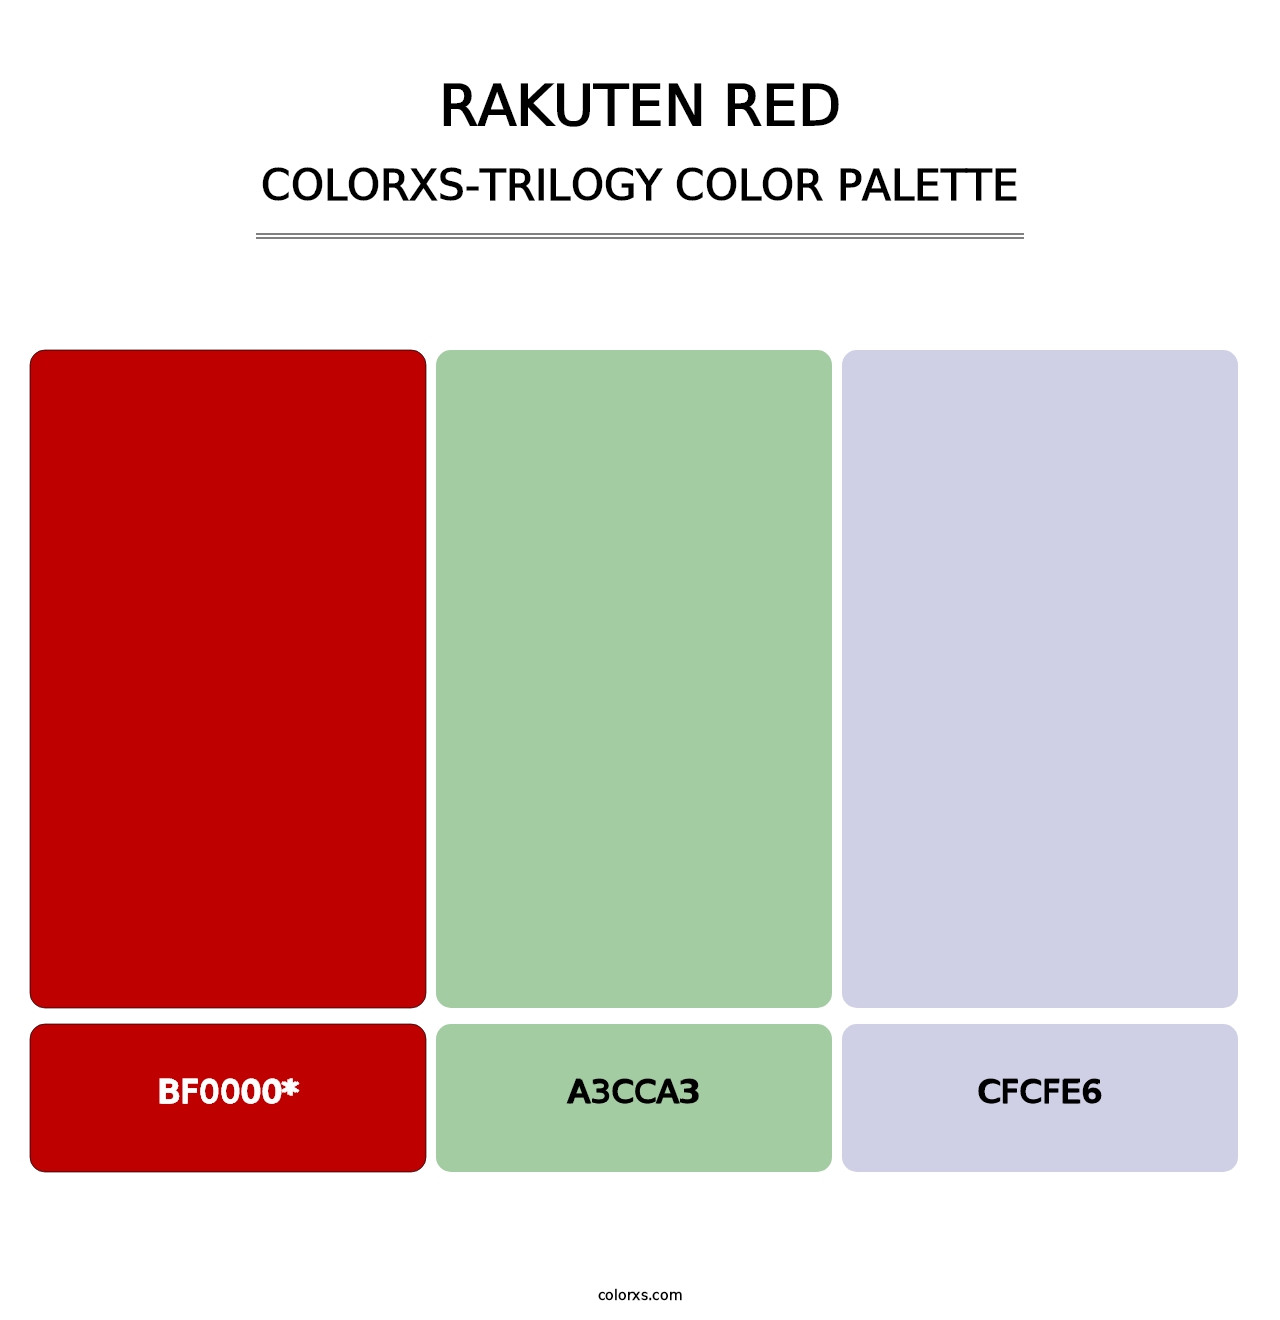 Rakuten Red - Colorxs Trilogy Palette